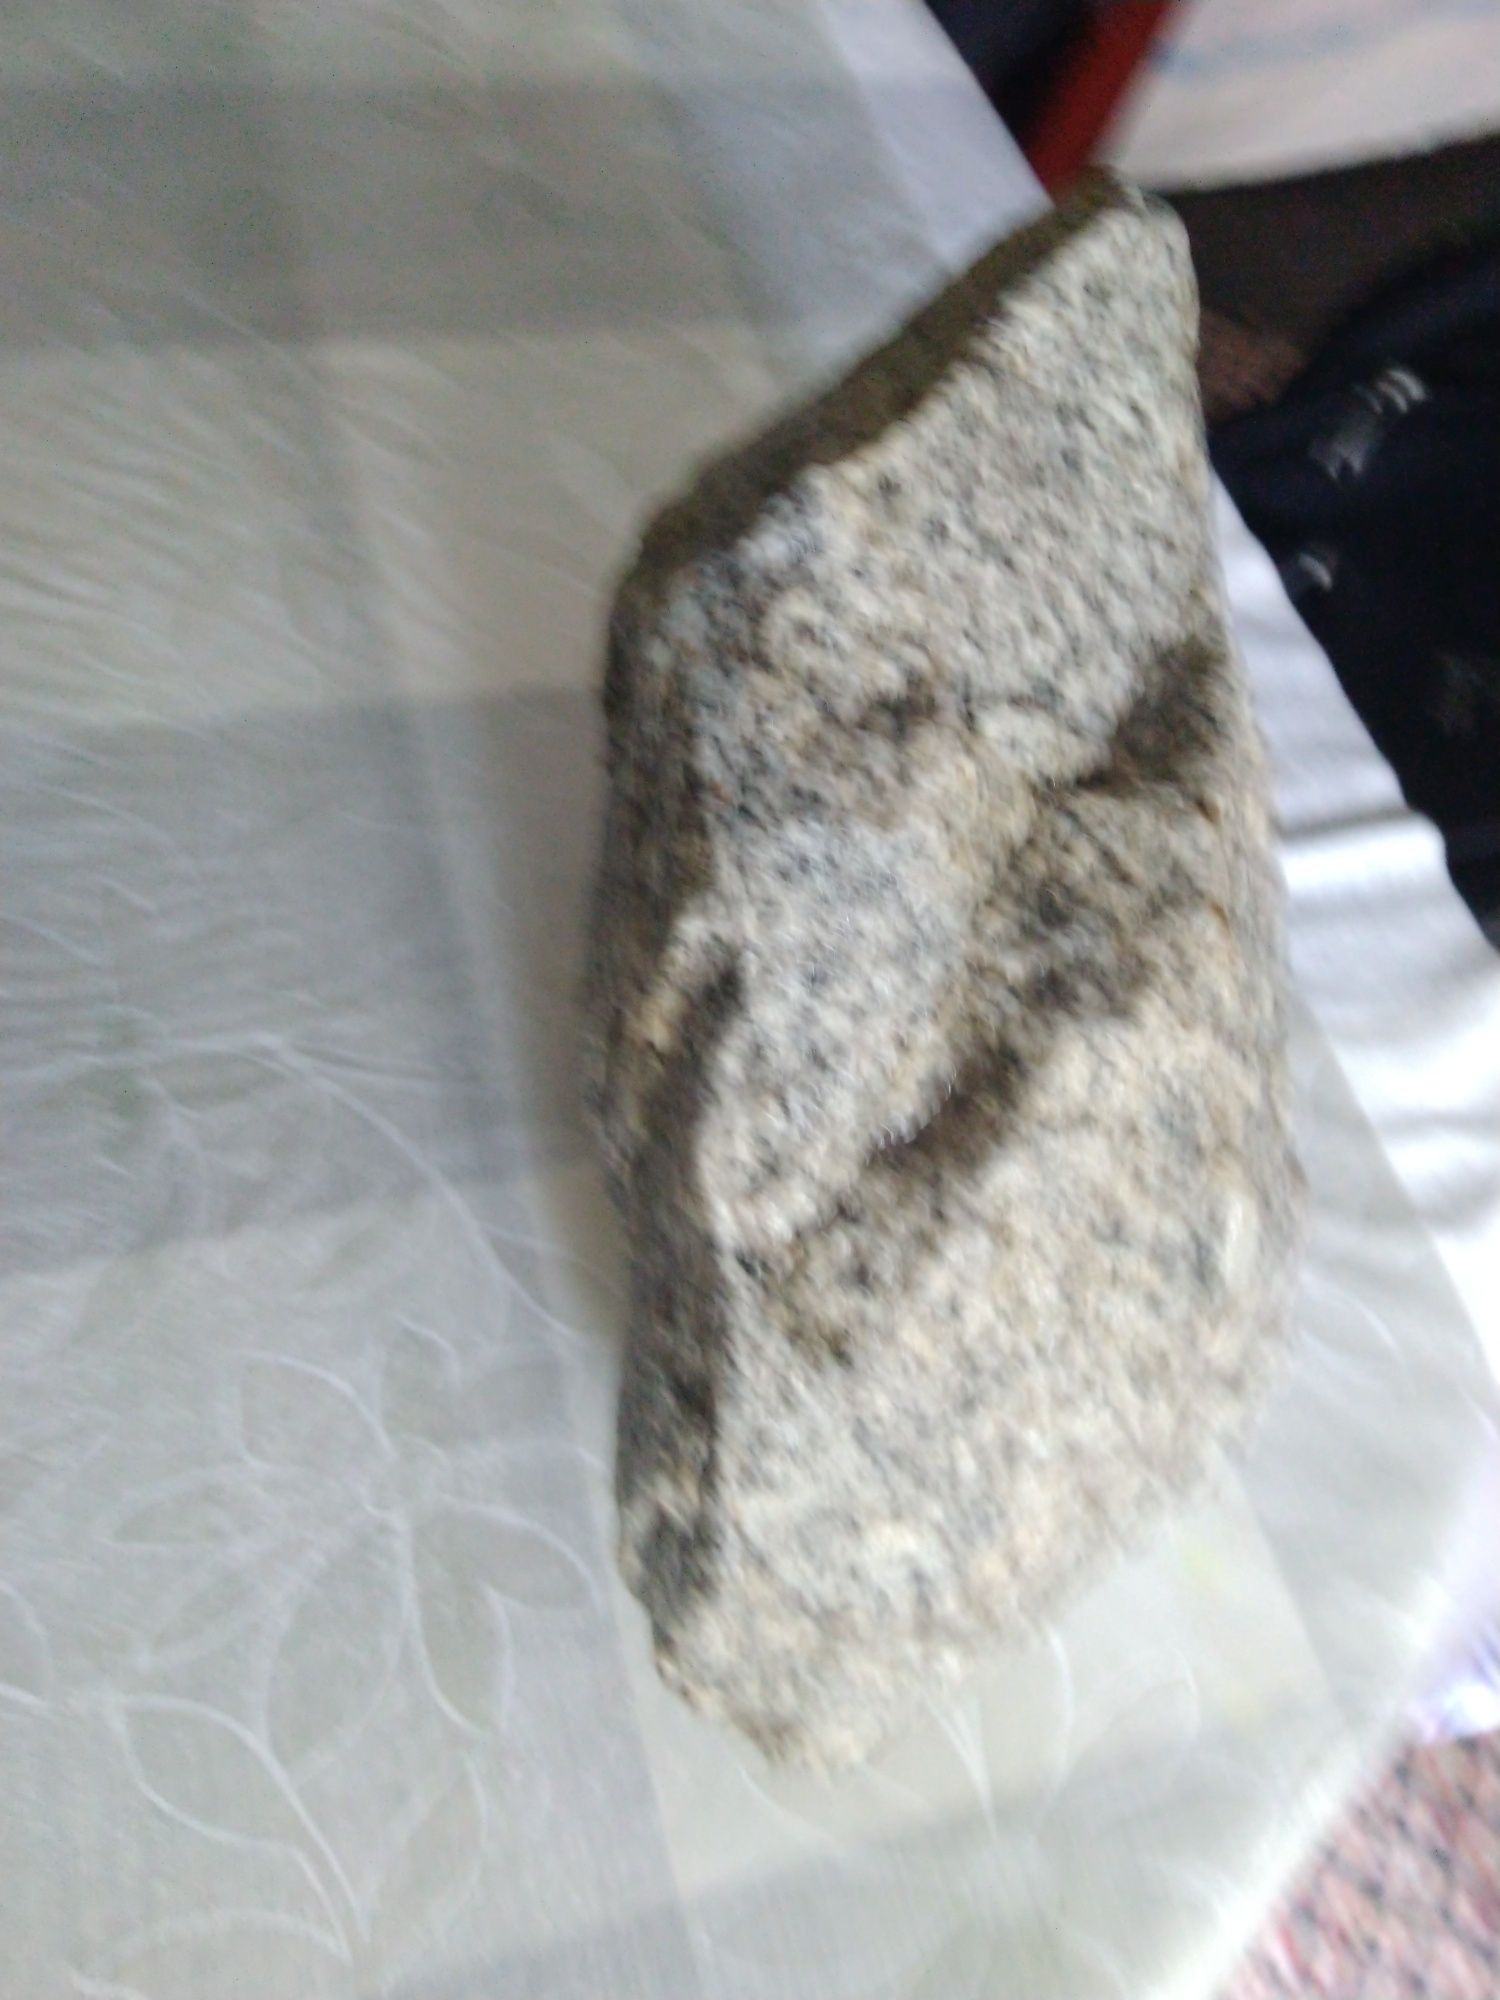 Kamień ozdobny granit